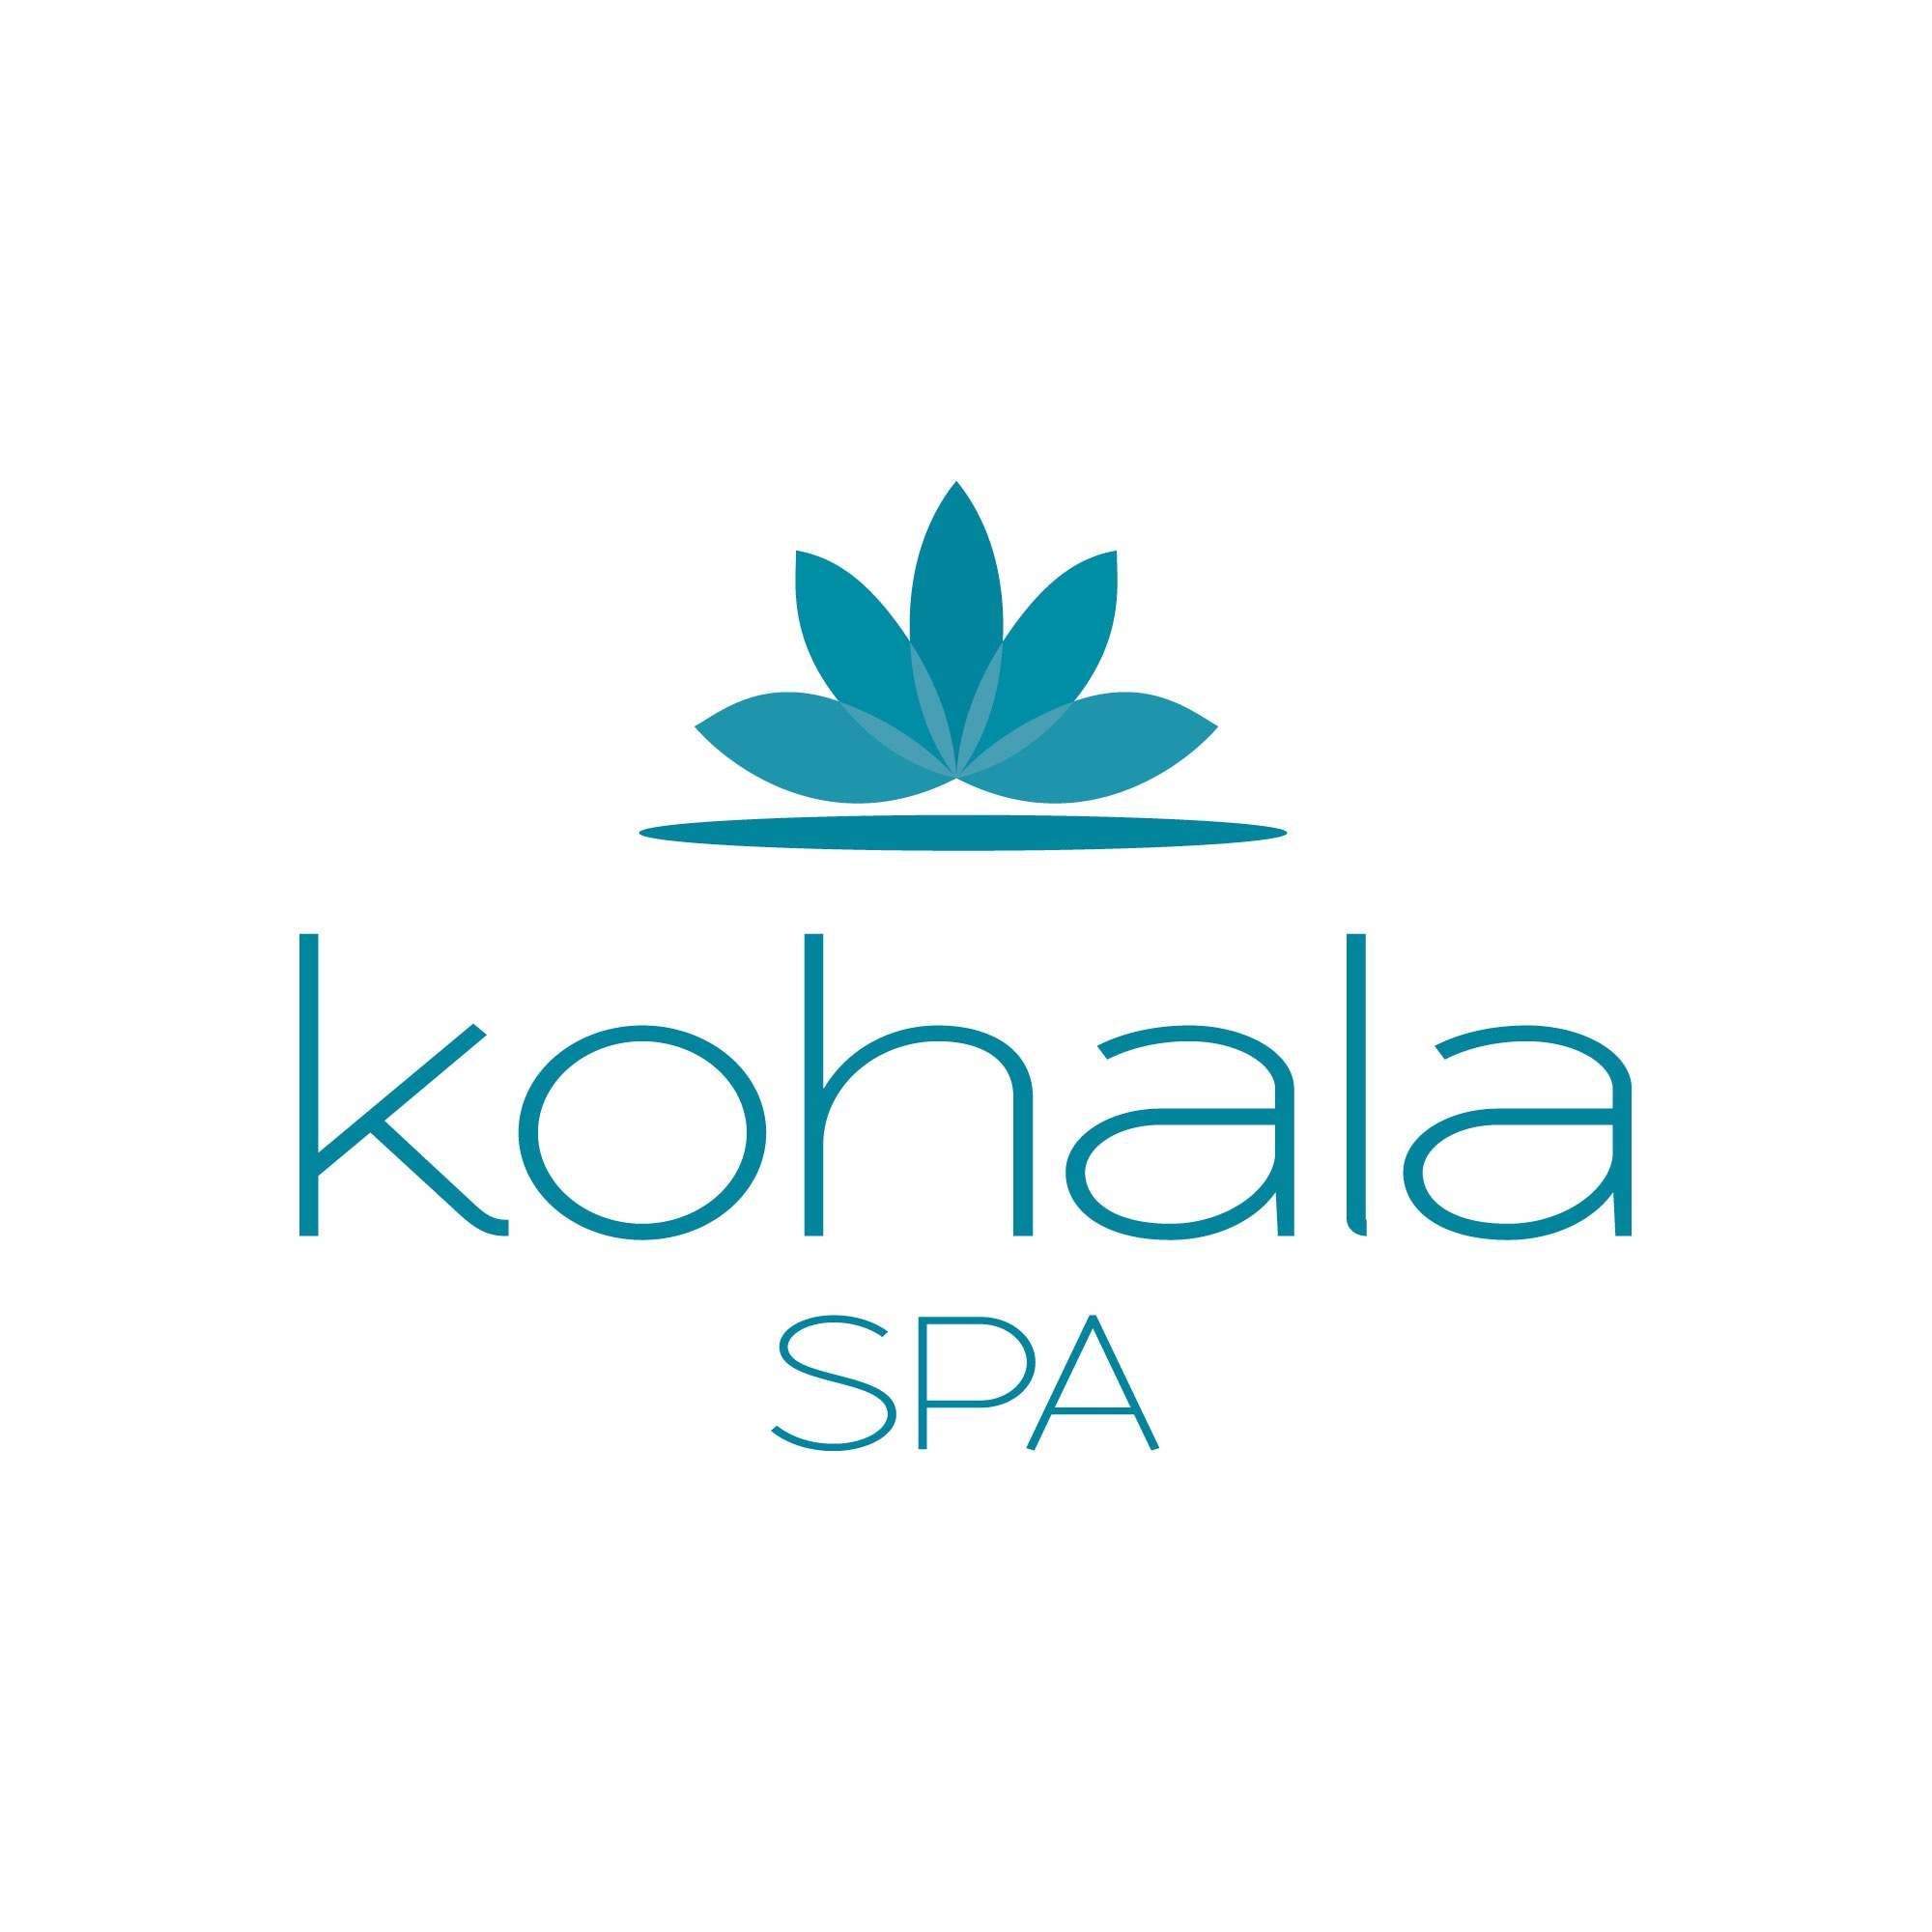 Kohala Spa - Waikoloa, HI 96738 - (808)886-2828 | ShowMeLocal.com